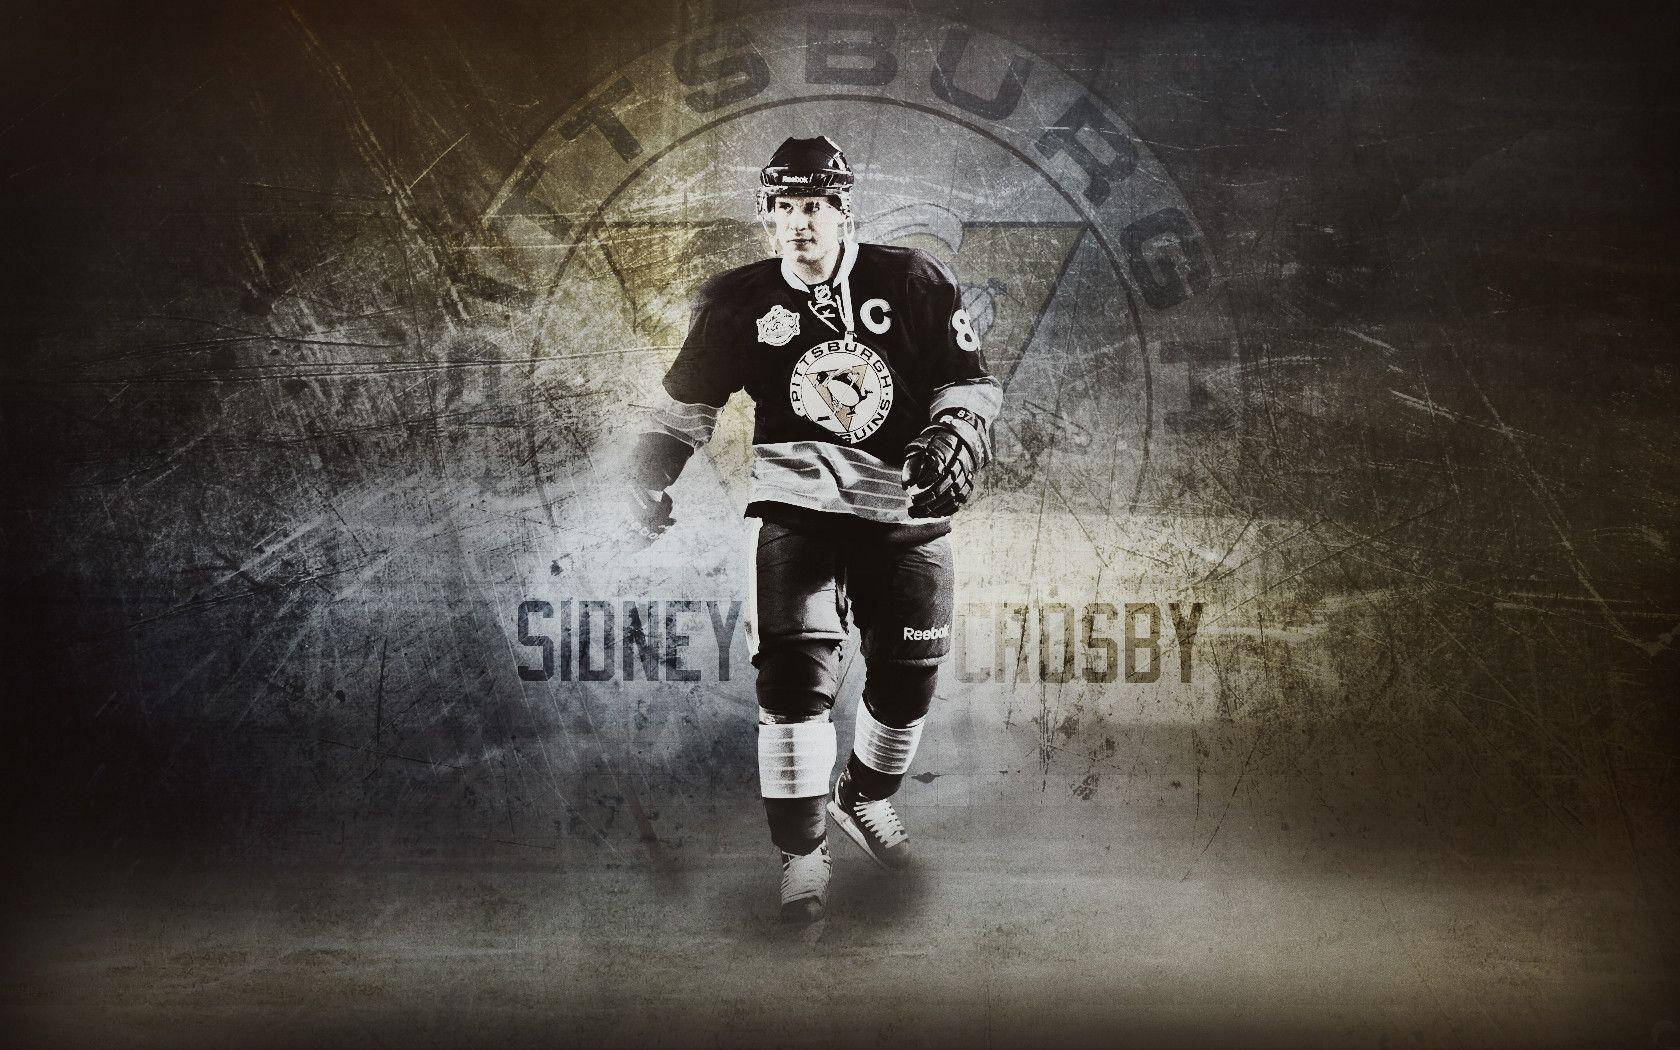 Emozionantegioco Di Ice Hockey Con Sidney Crosby Sfondo